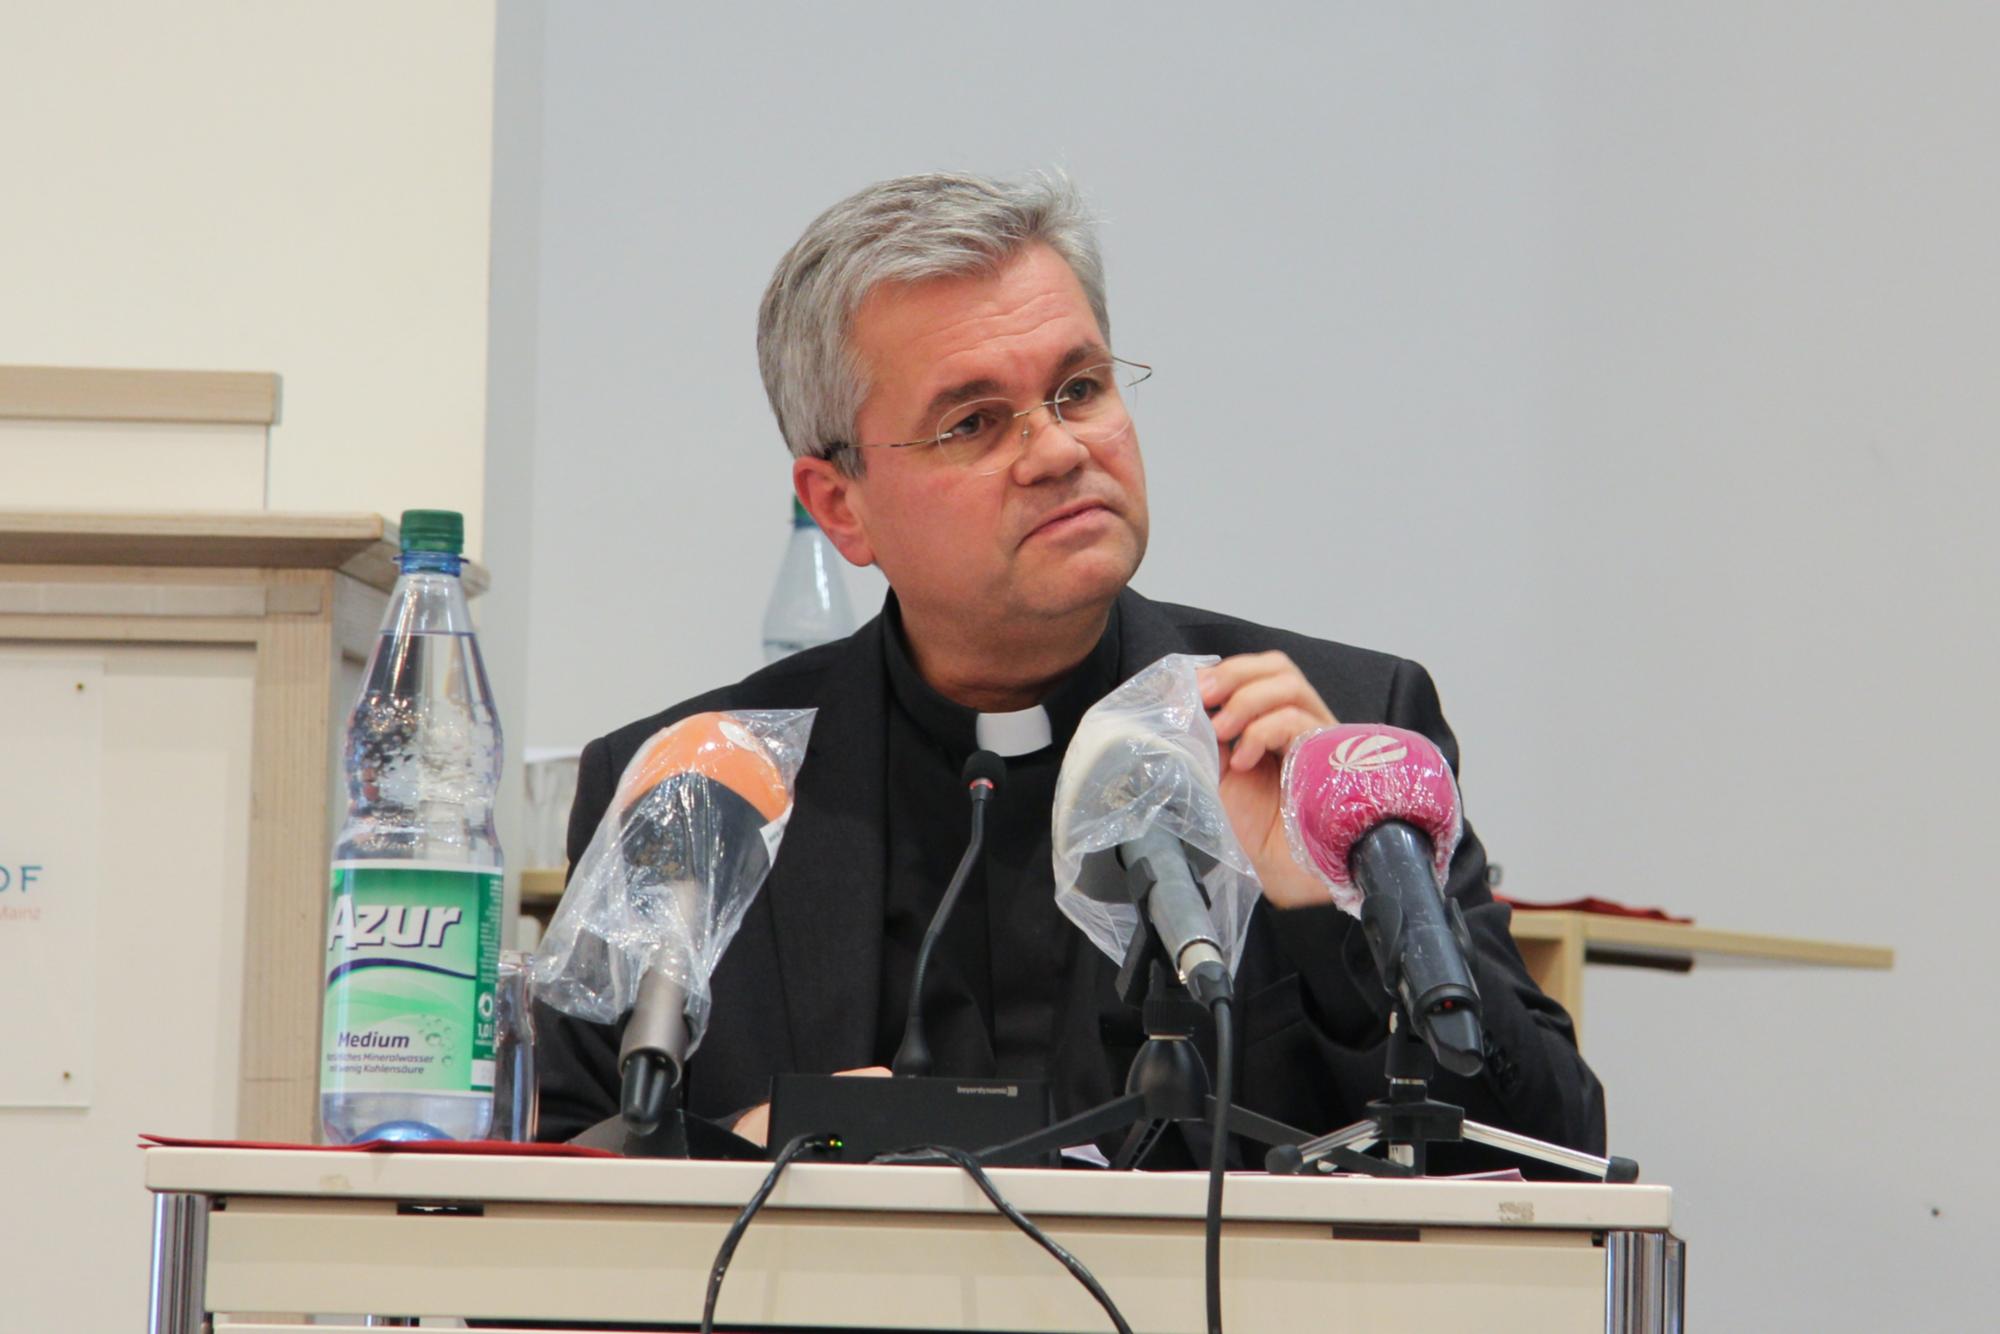 Weihbischof Bentz bei der Pressekonferenz am 7 Oktober 2020 in Mainz (c) Bistum Mainz